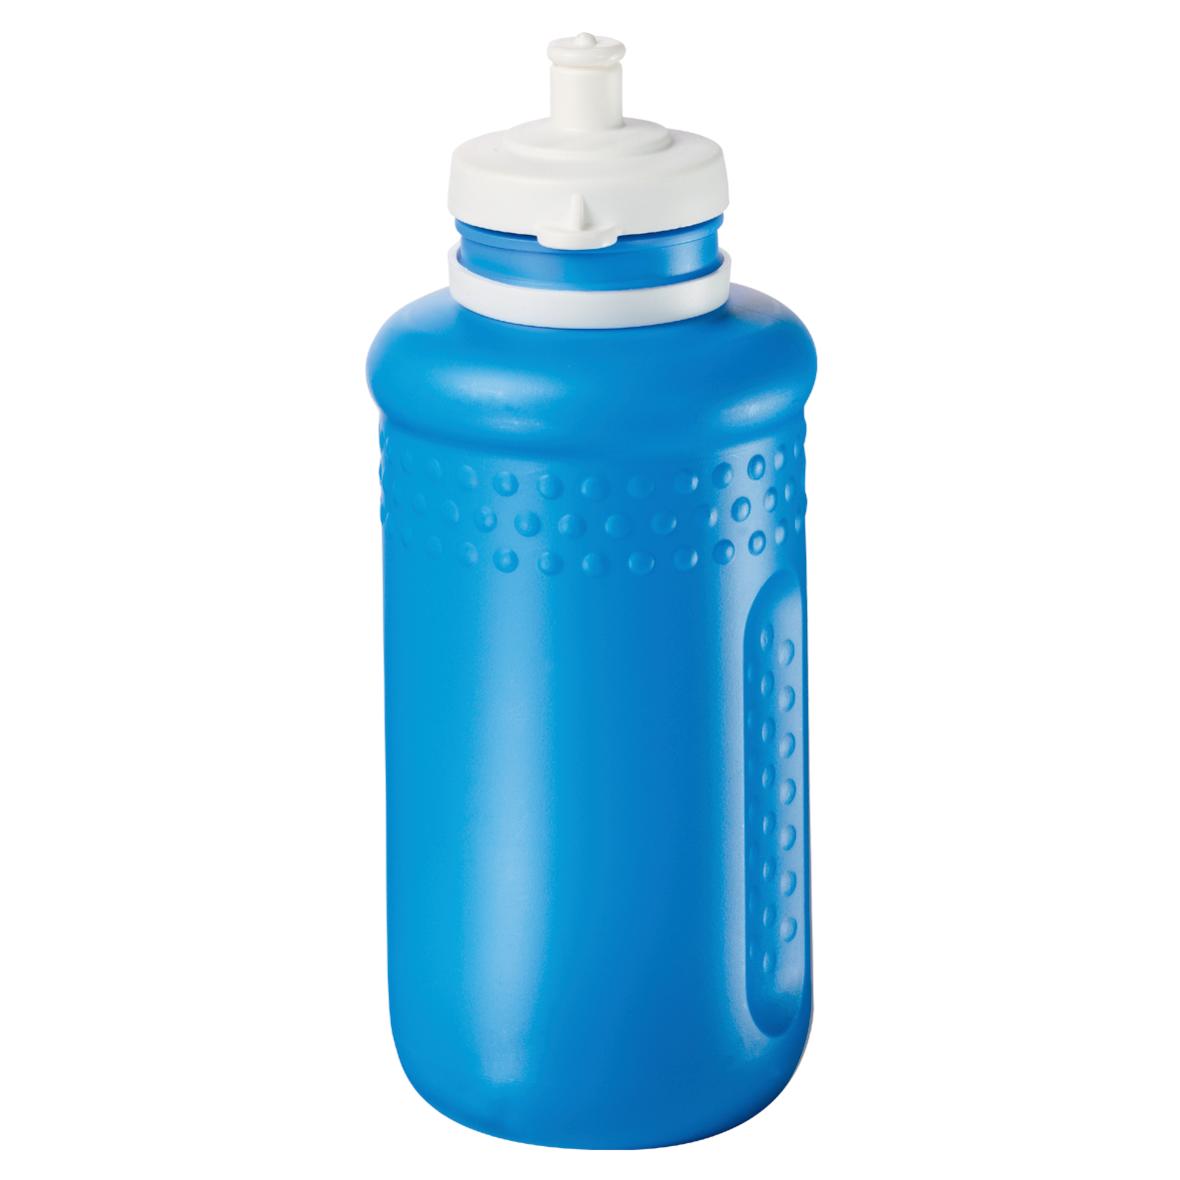 Food-Safe Plastic Drinking Bottle - Little Bealings - Walton